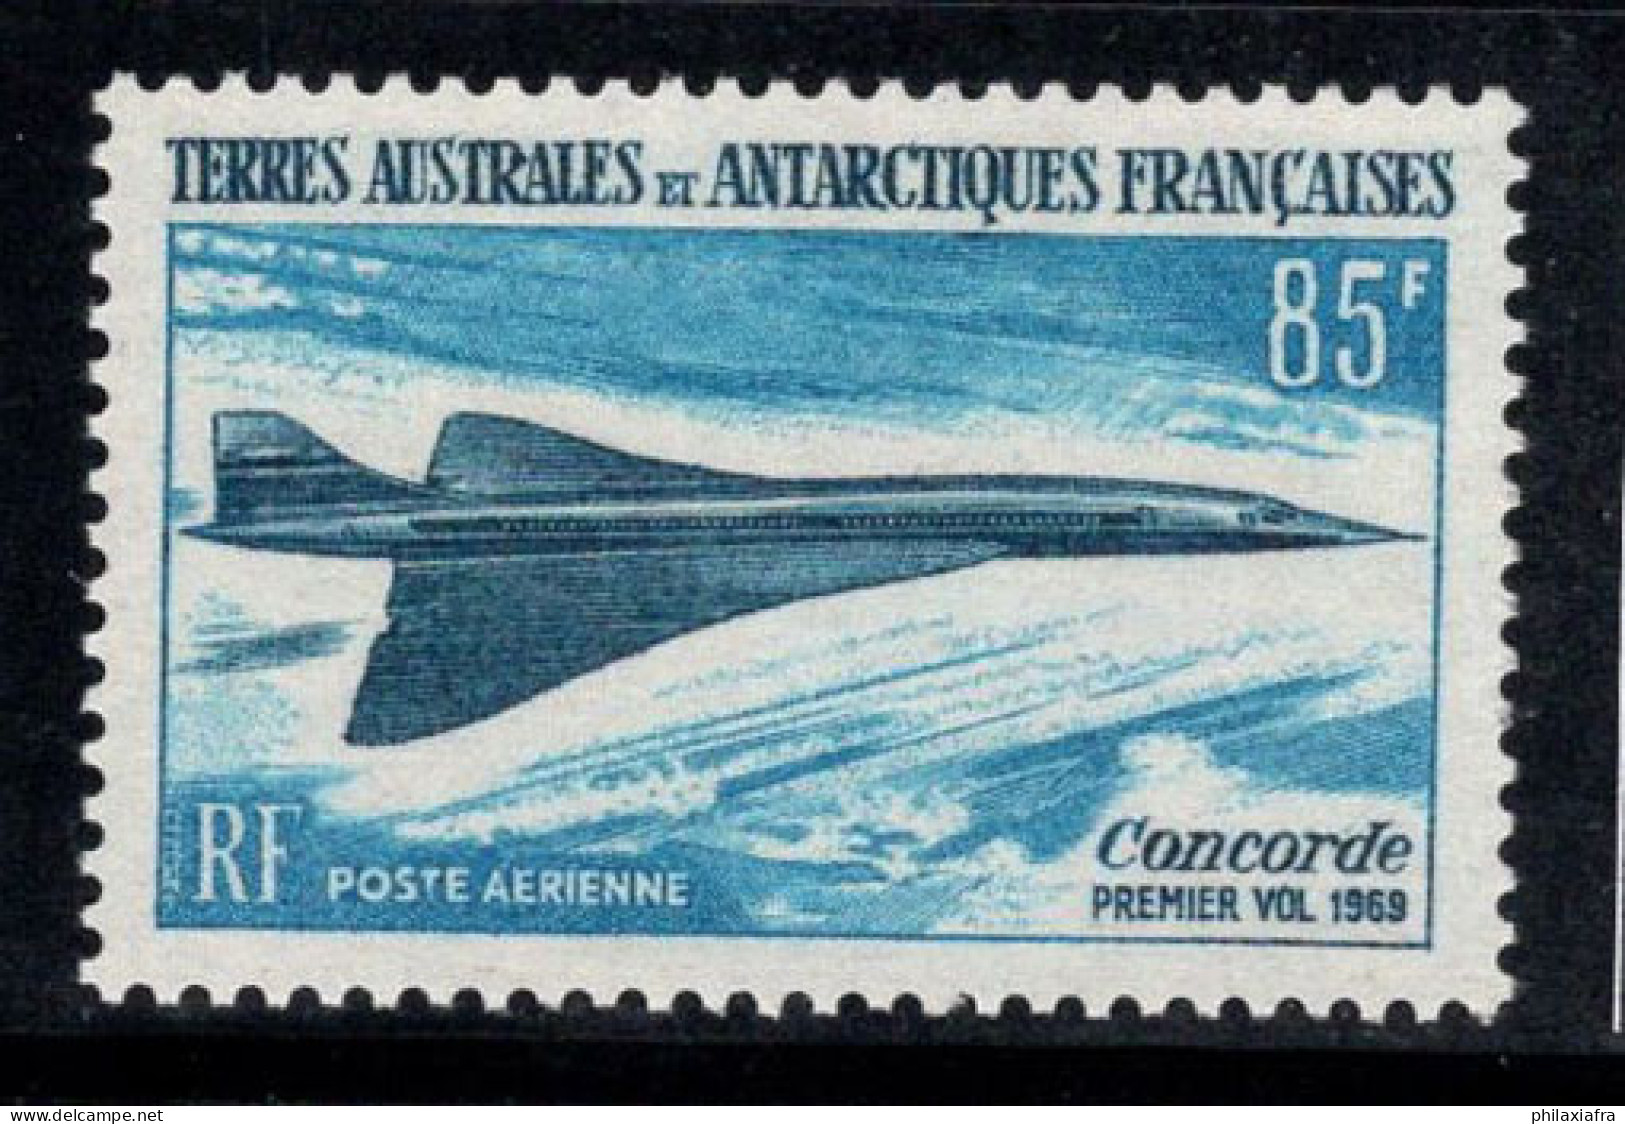 Territoire Antarctique Français TAAF 1969 Mi. 51 Neuf ** 100% Poste Aérienne 85 Fr, Le Concorde,Avion - Nuevos